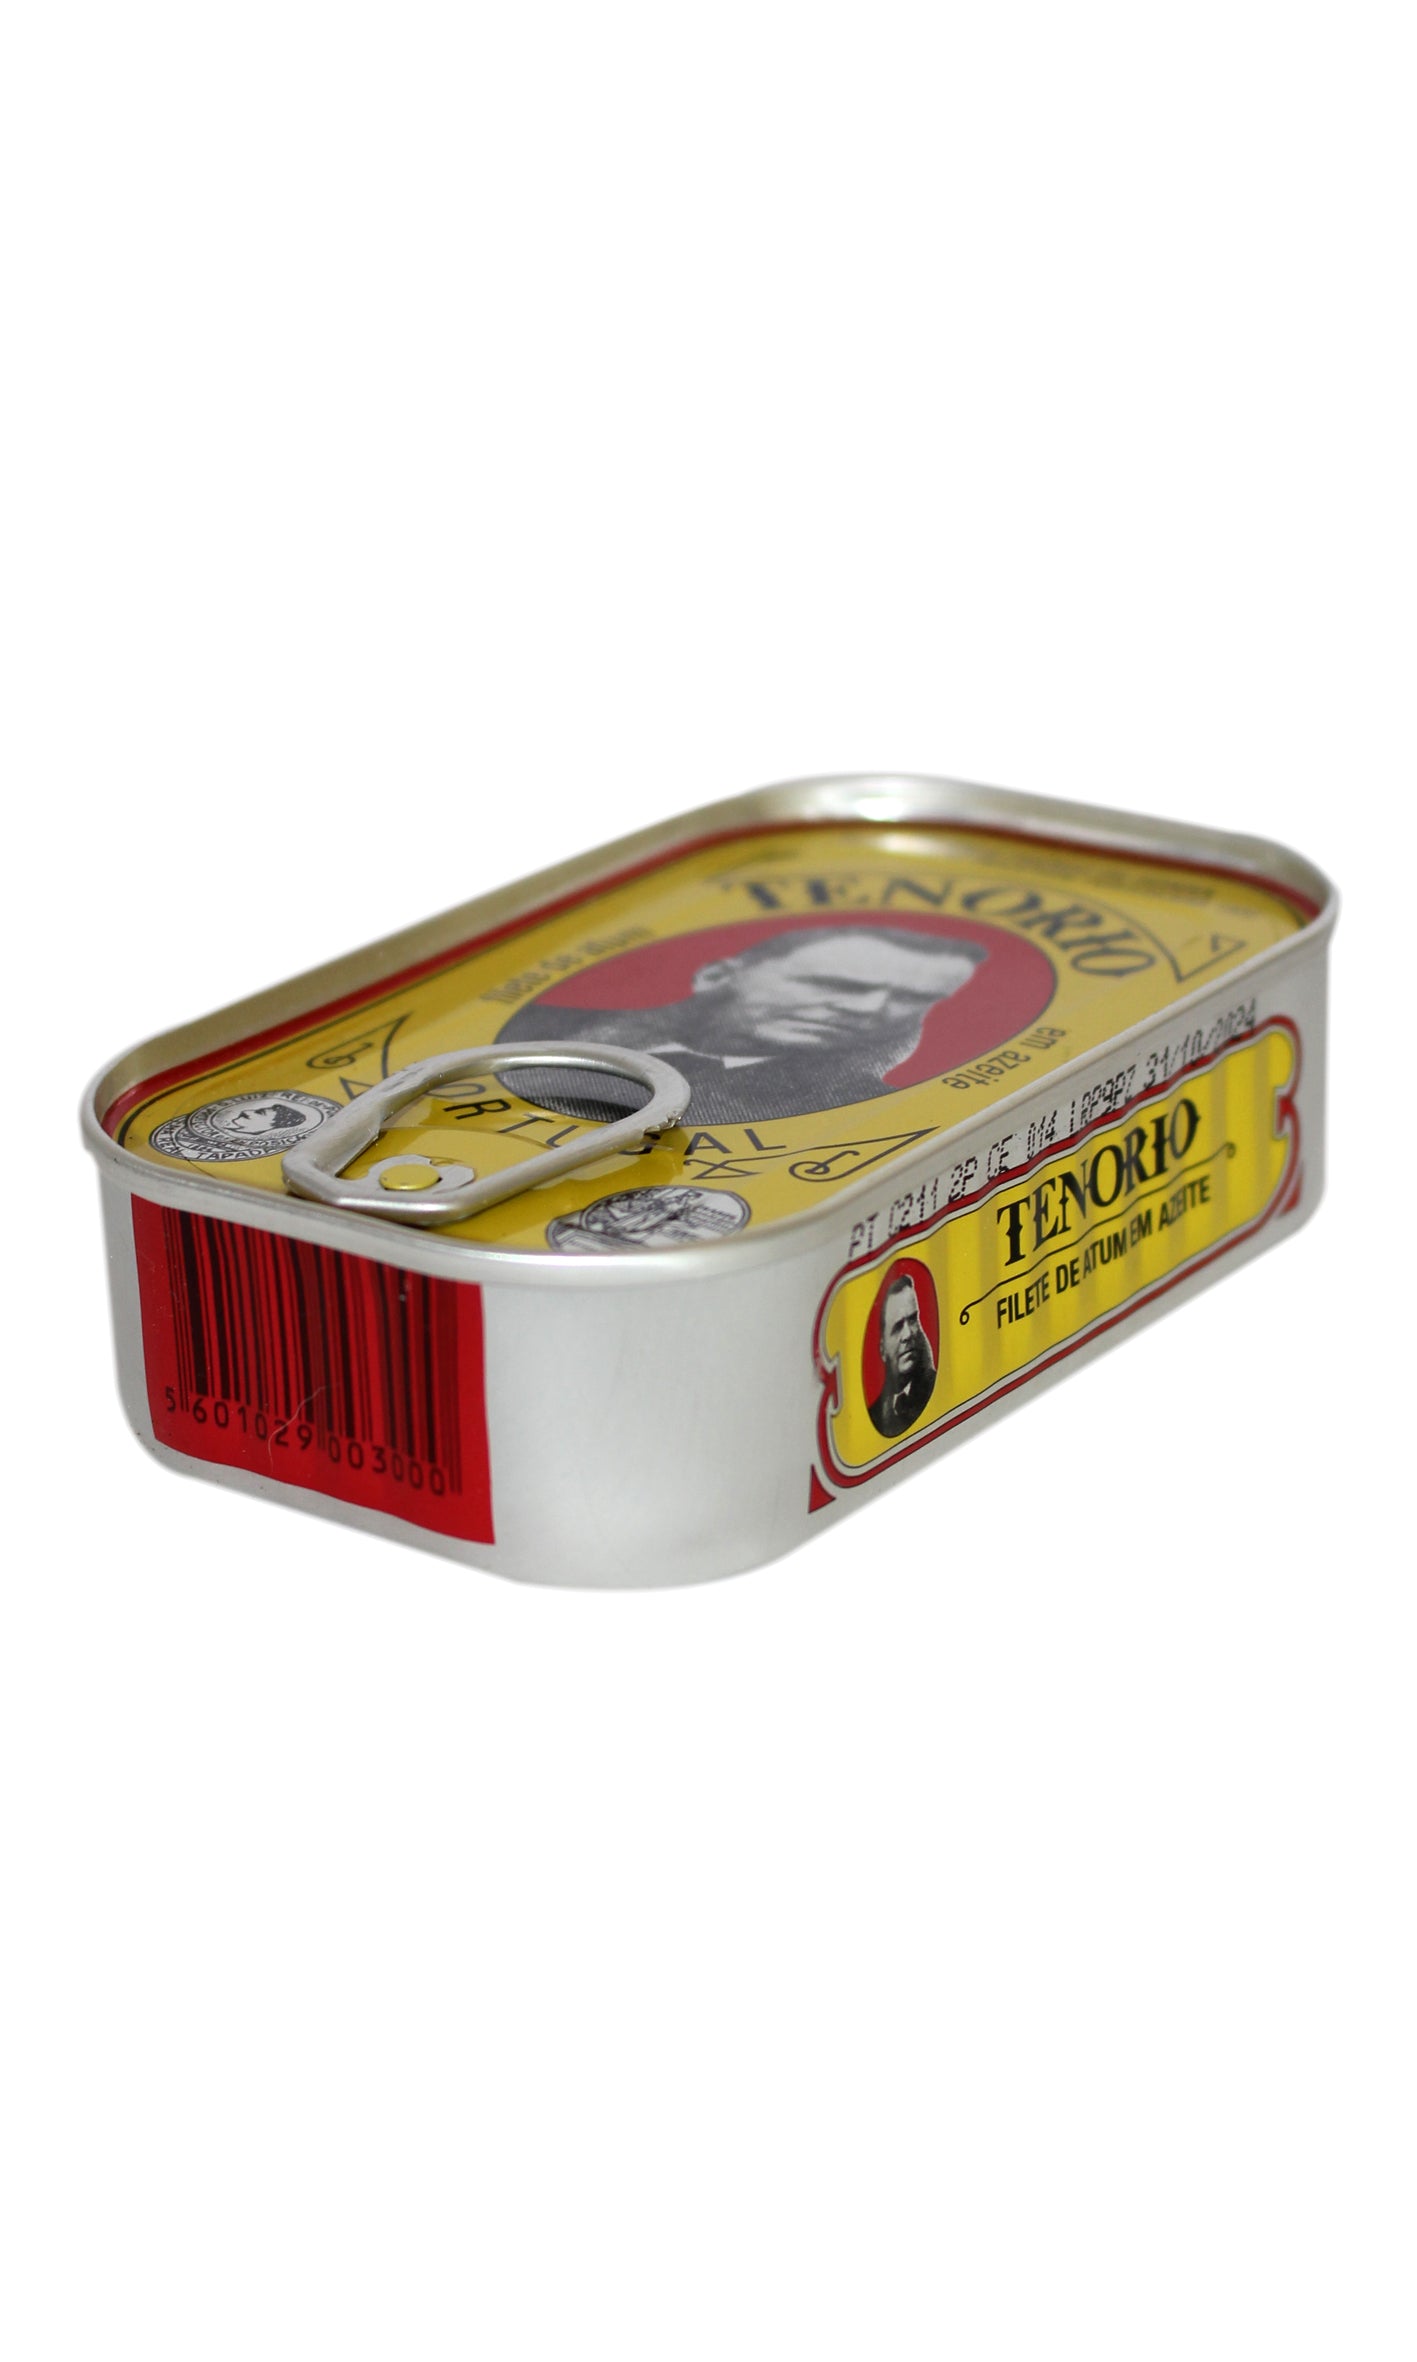 Tenorio: Tuna Fillet in Olive Oil - 120g